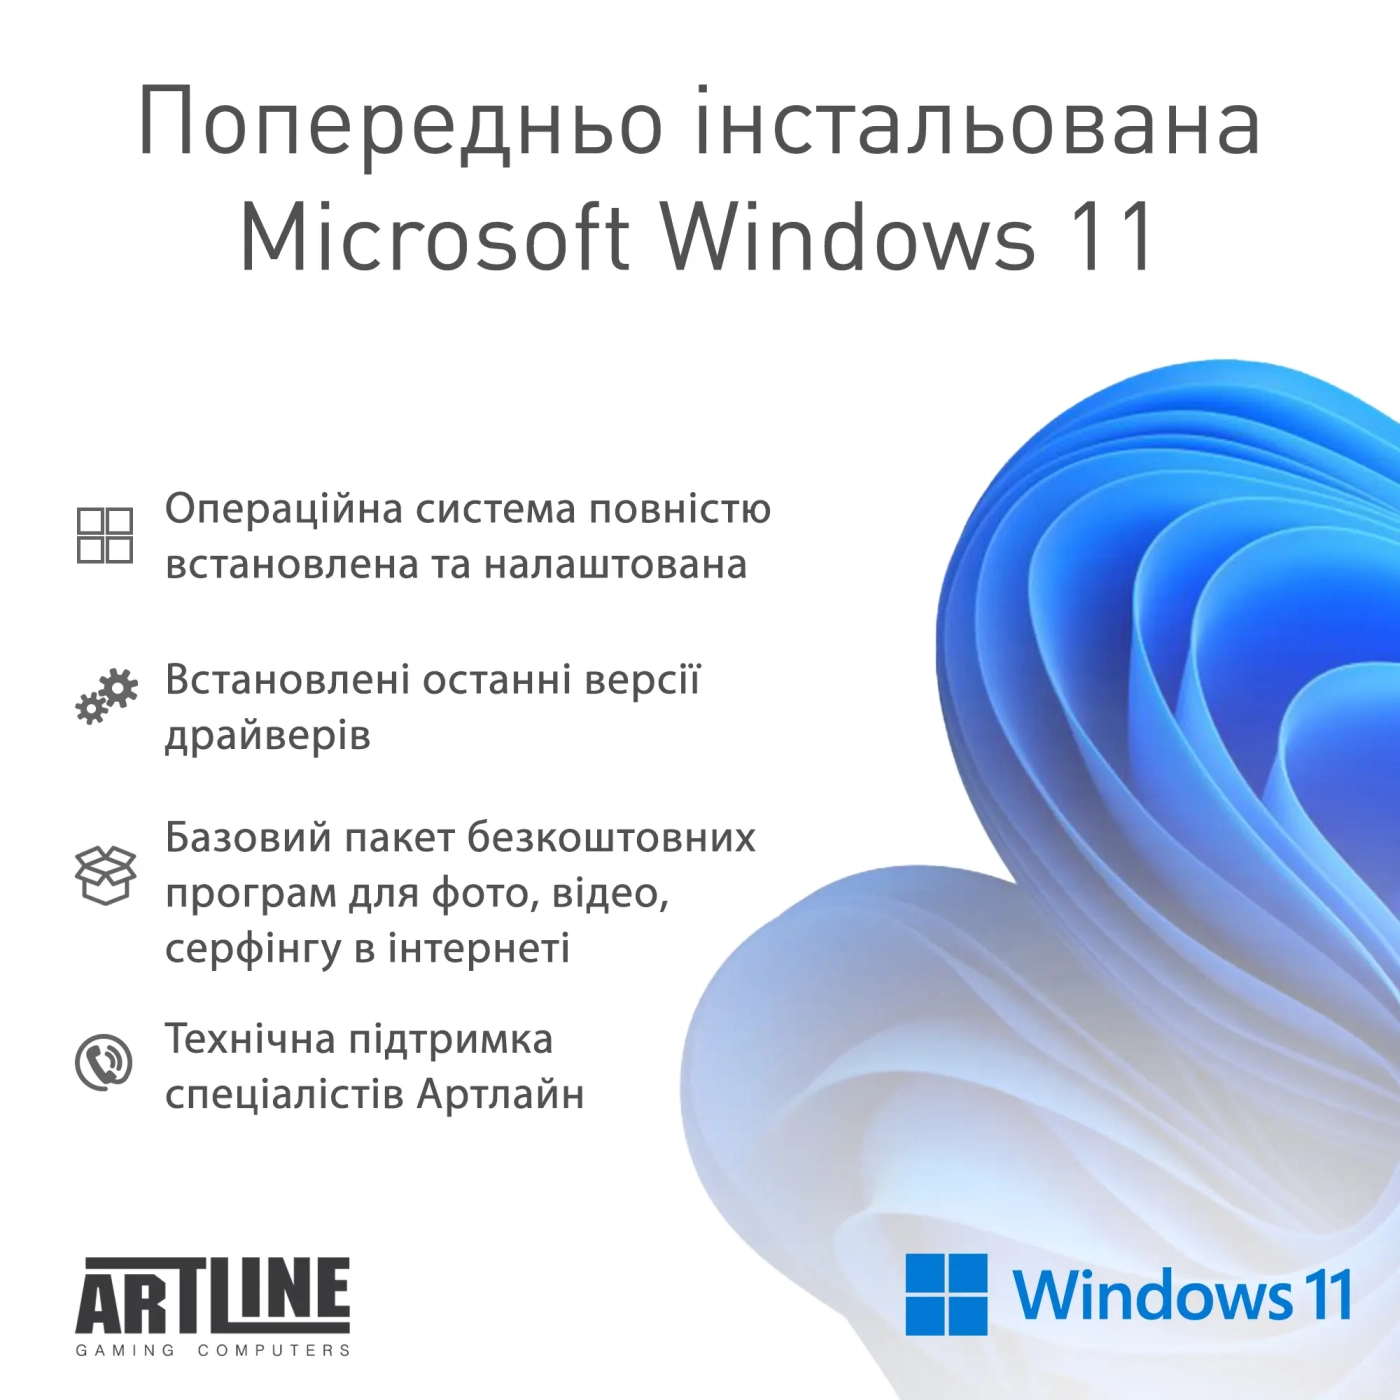 Купить Компьютер ARTLINE Gaming D31 Windows 11 Home (D31v10Win) - фото 12